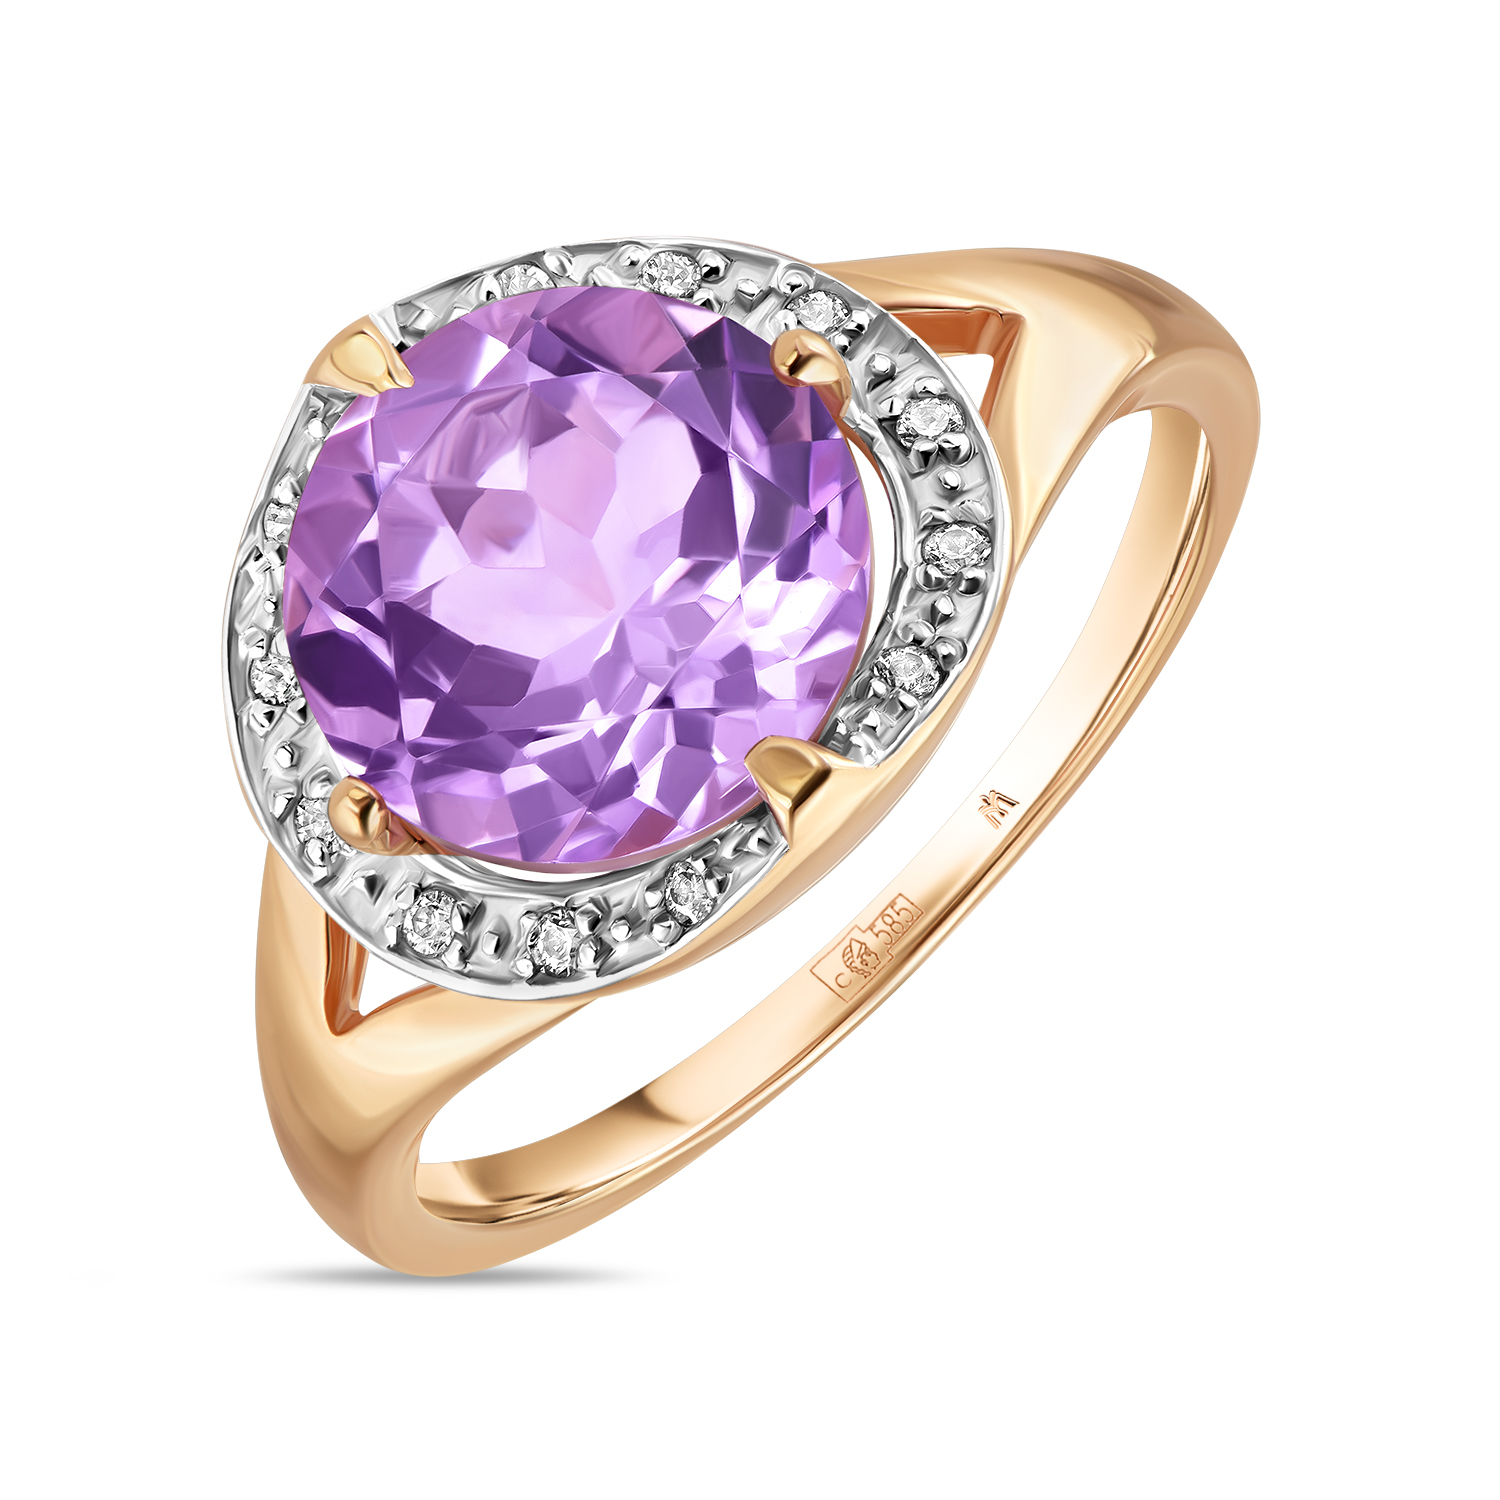 Кольца МЮЗ Золотое кольцо с аметистом и фианитами кольцо diamant из серебра с аметистом и фианитами 94 310 00679 2 размер 18 5